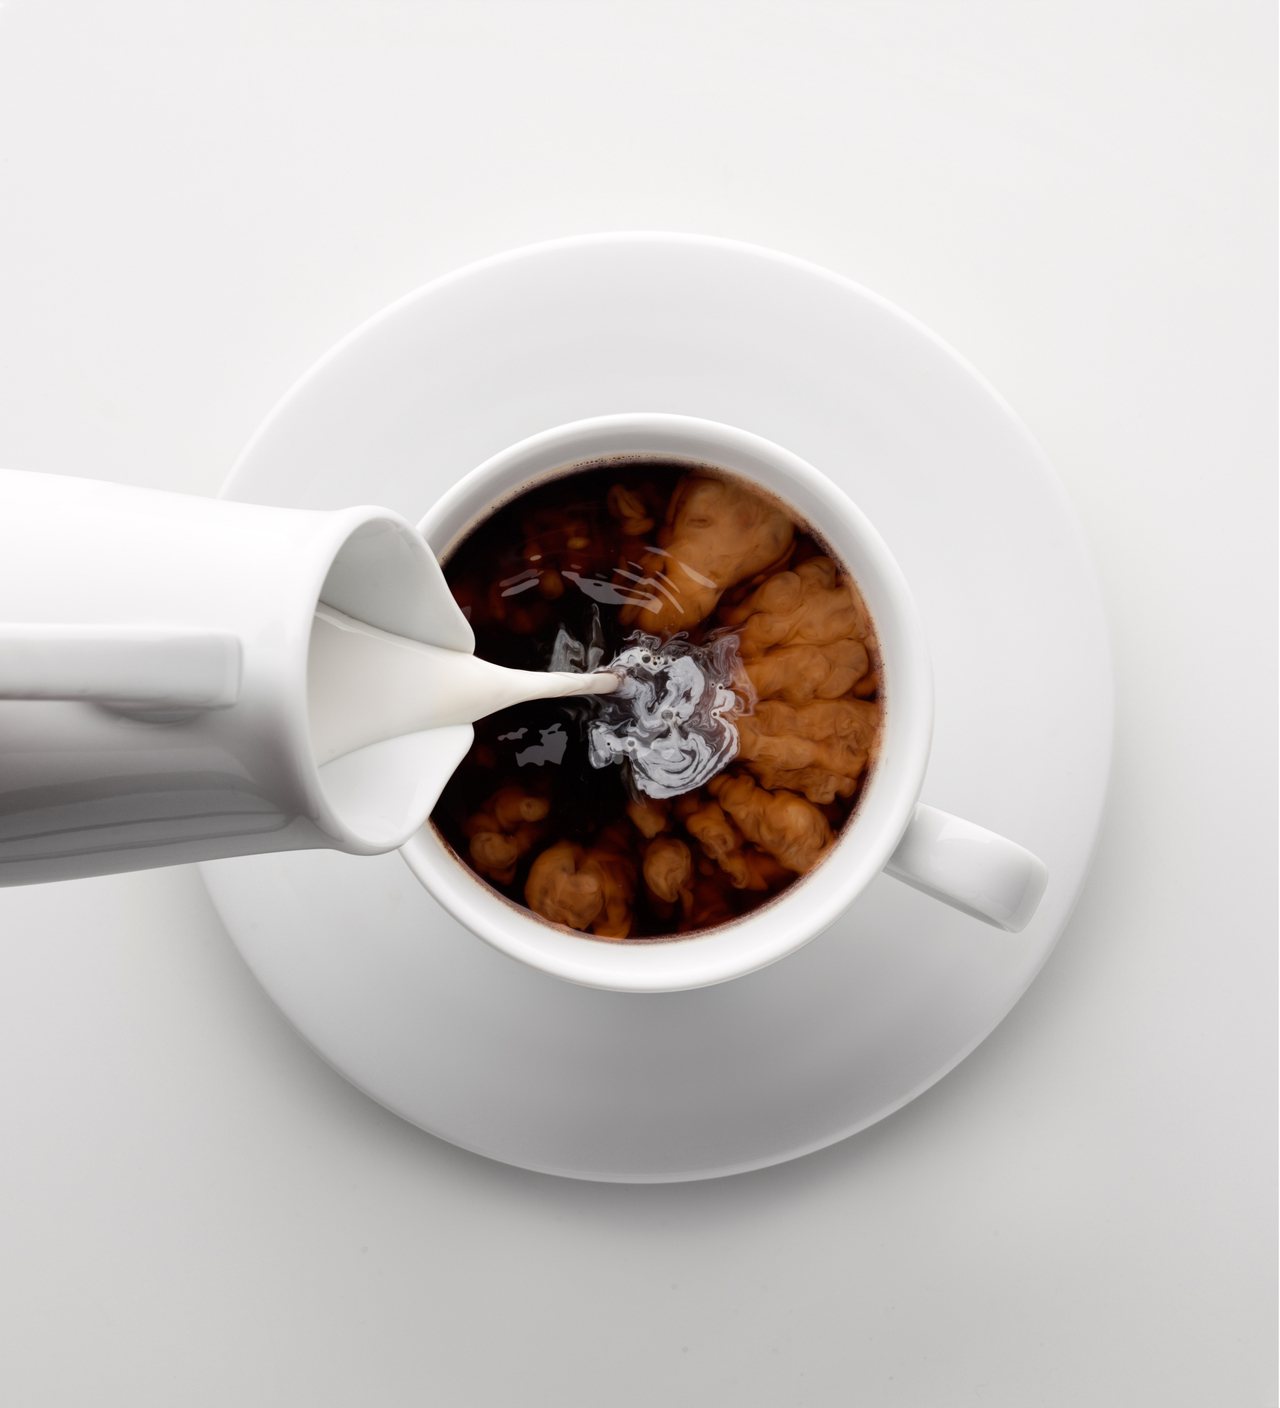 每天攝入400毫克（mg）的咖啡因是可接受範圍，以較淡的美式咖啡來說，每杯240cc大約含有100-180毫克的咖啡因，每天喝2-3杯為限，最好不要超過。